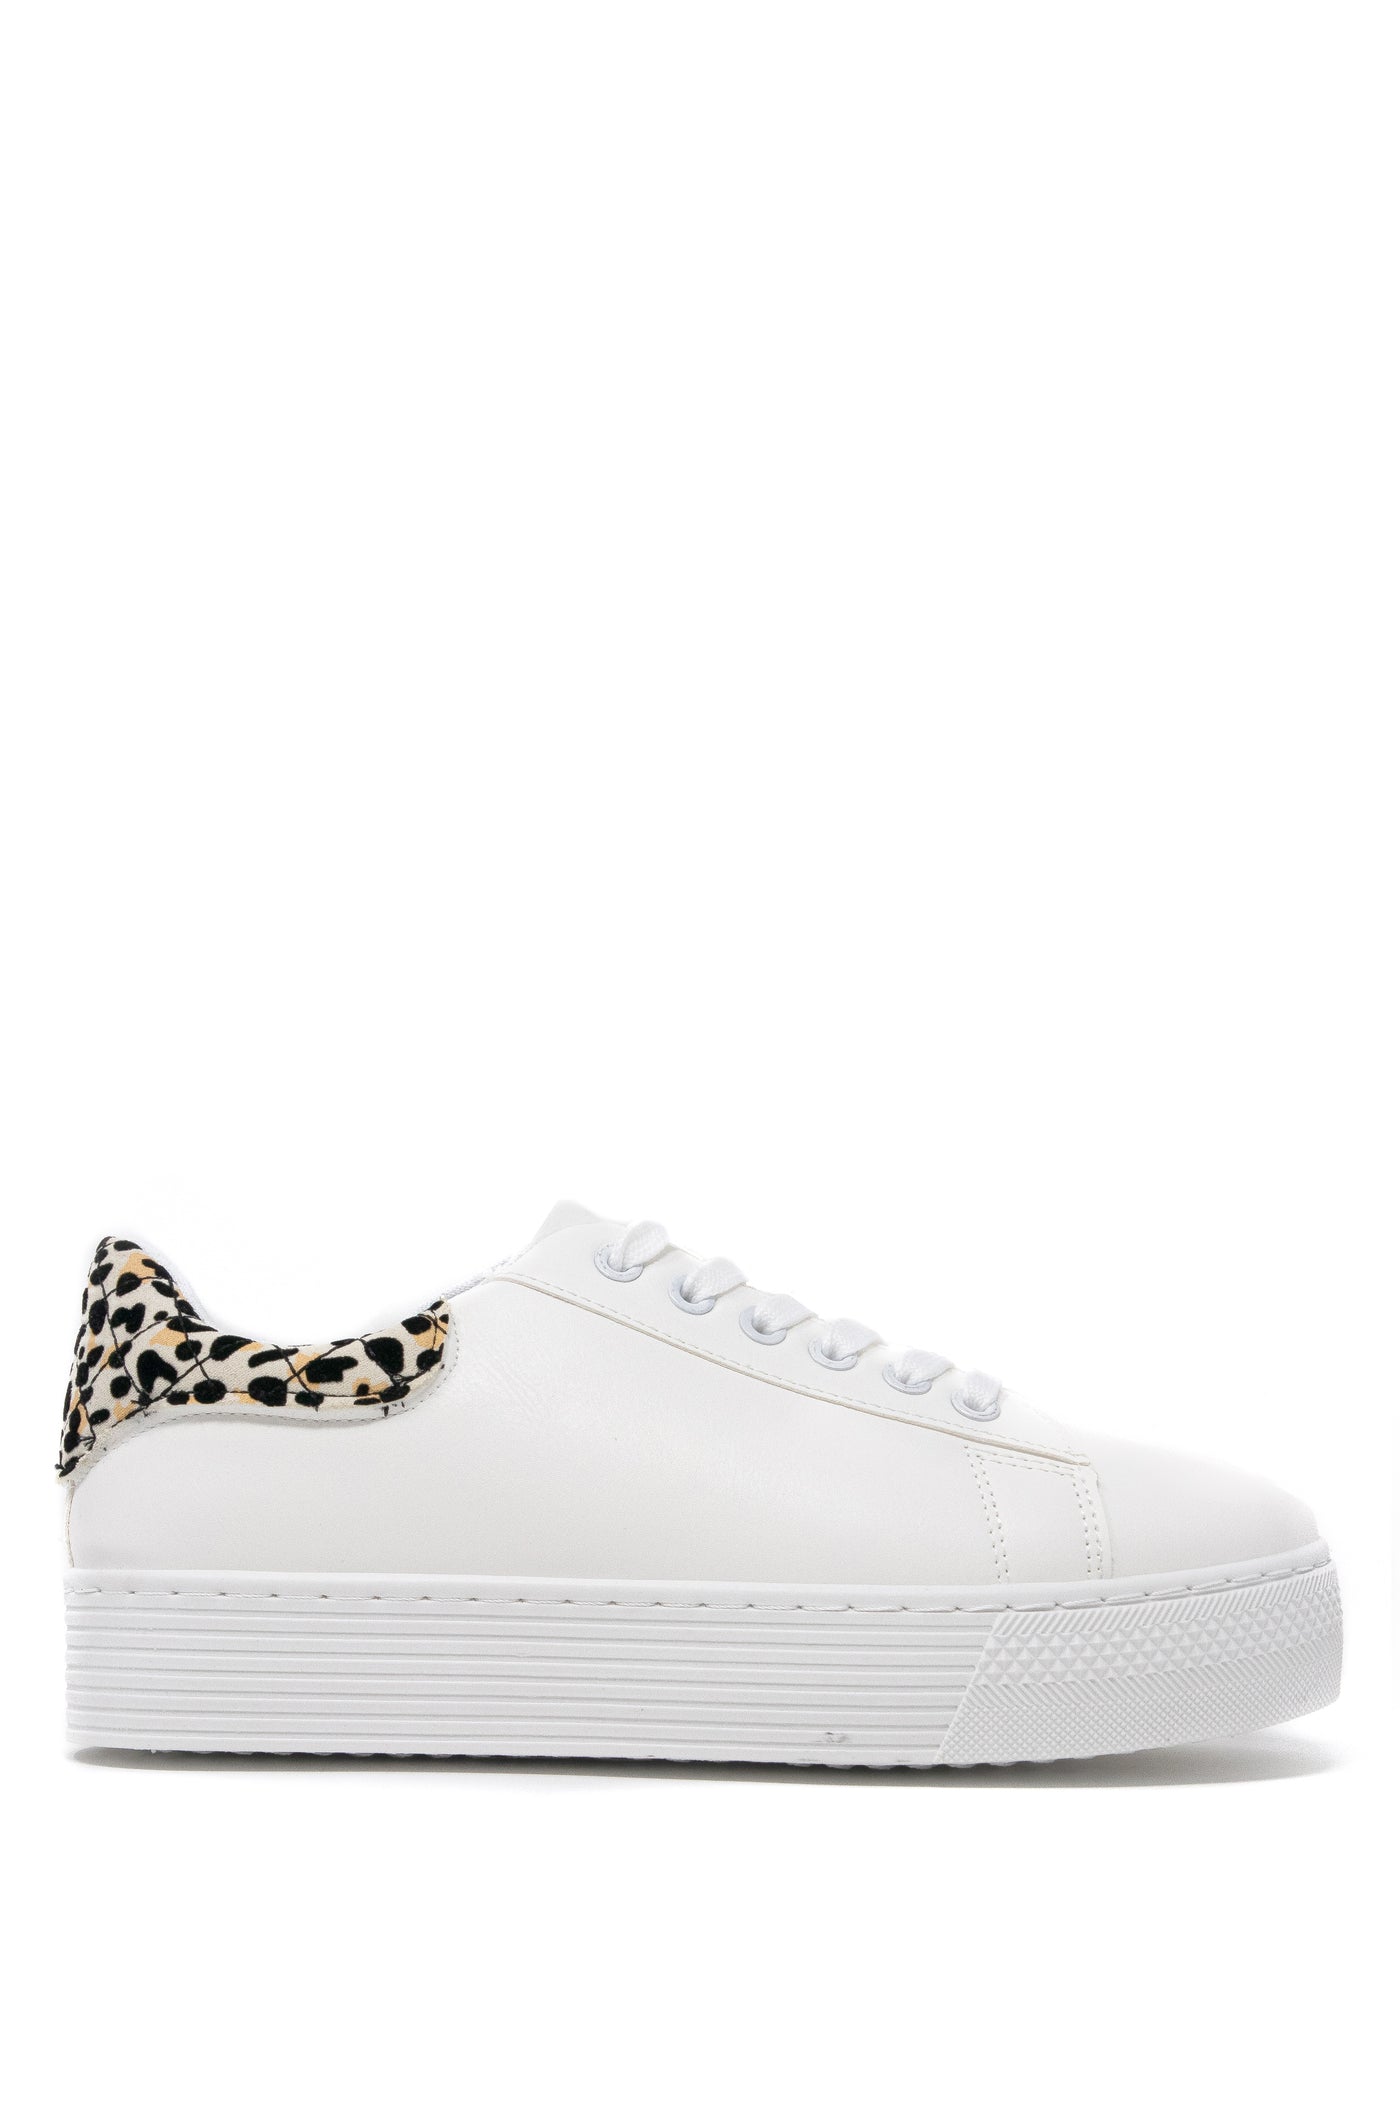 NYC Strut - Leopard Sneakers